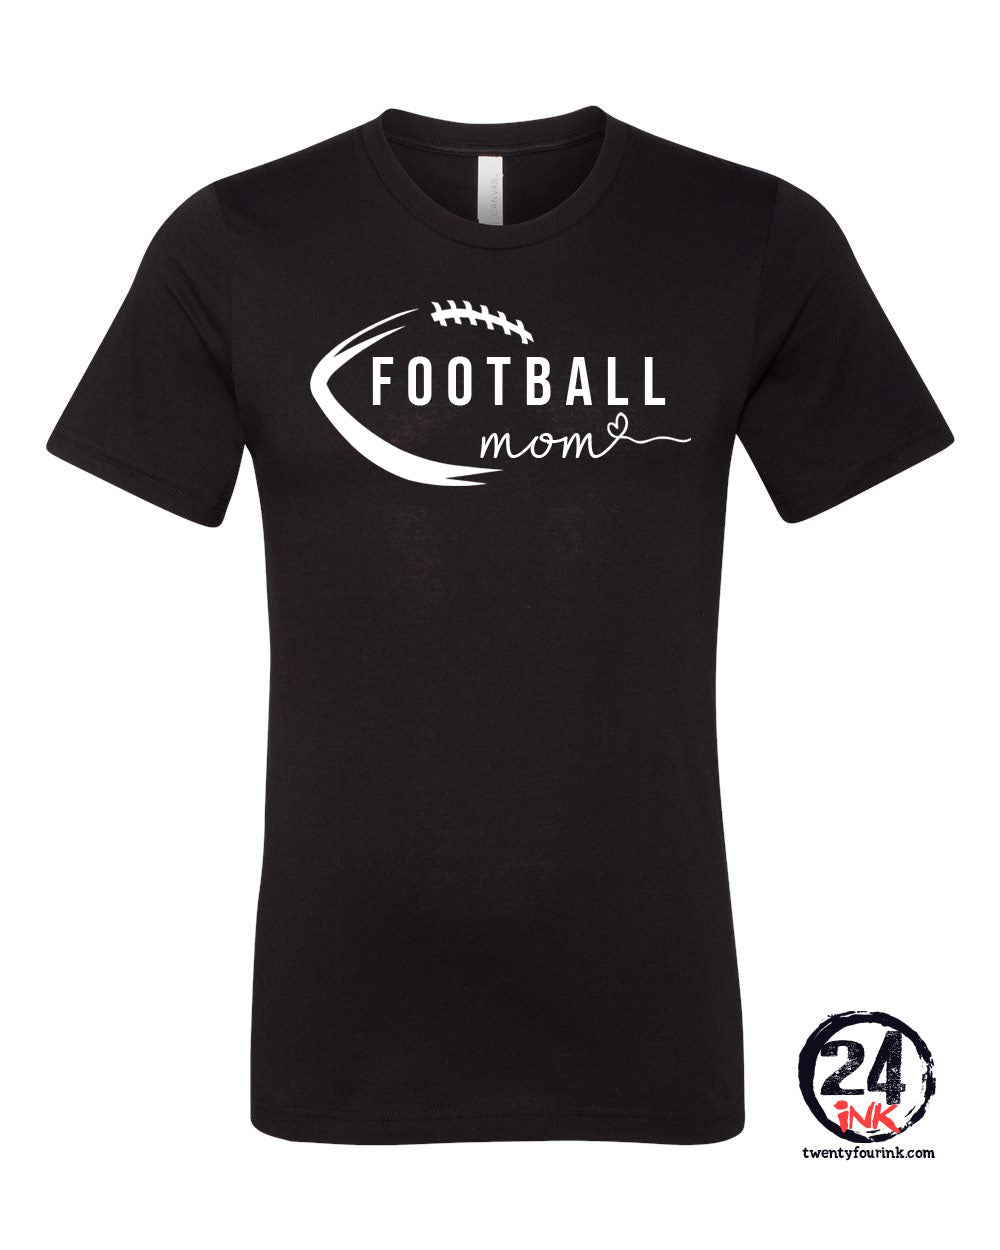 High Point Football design 5 T-Shirt